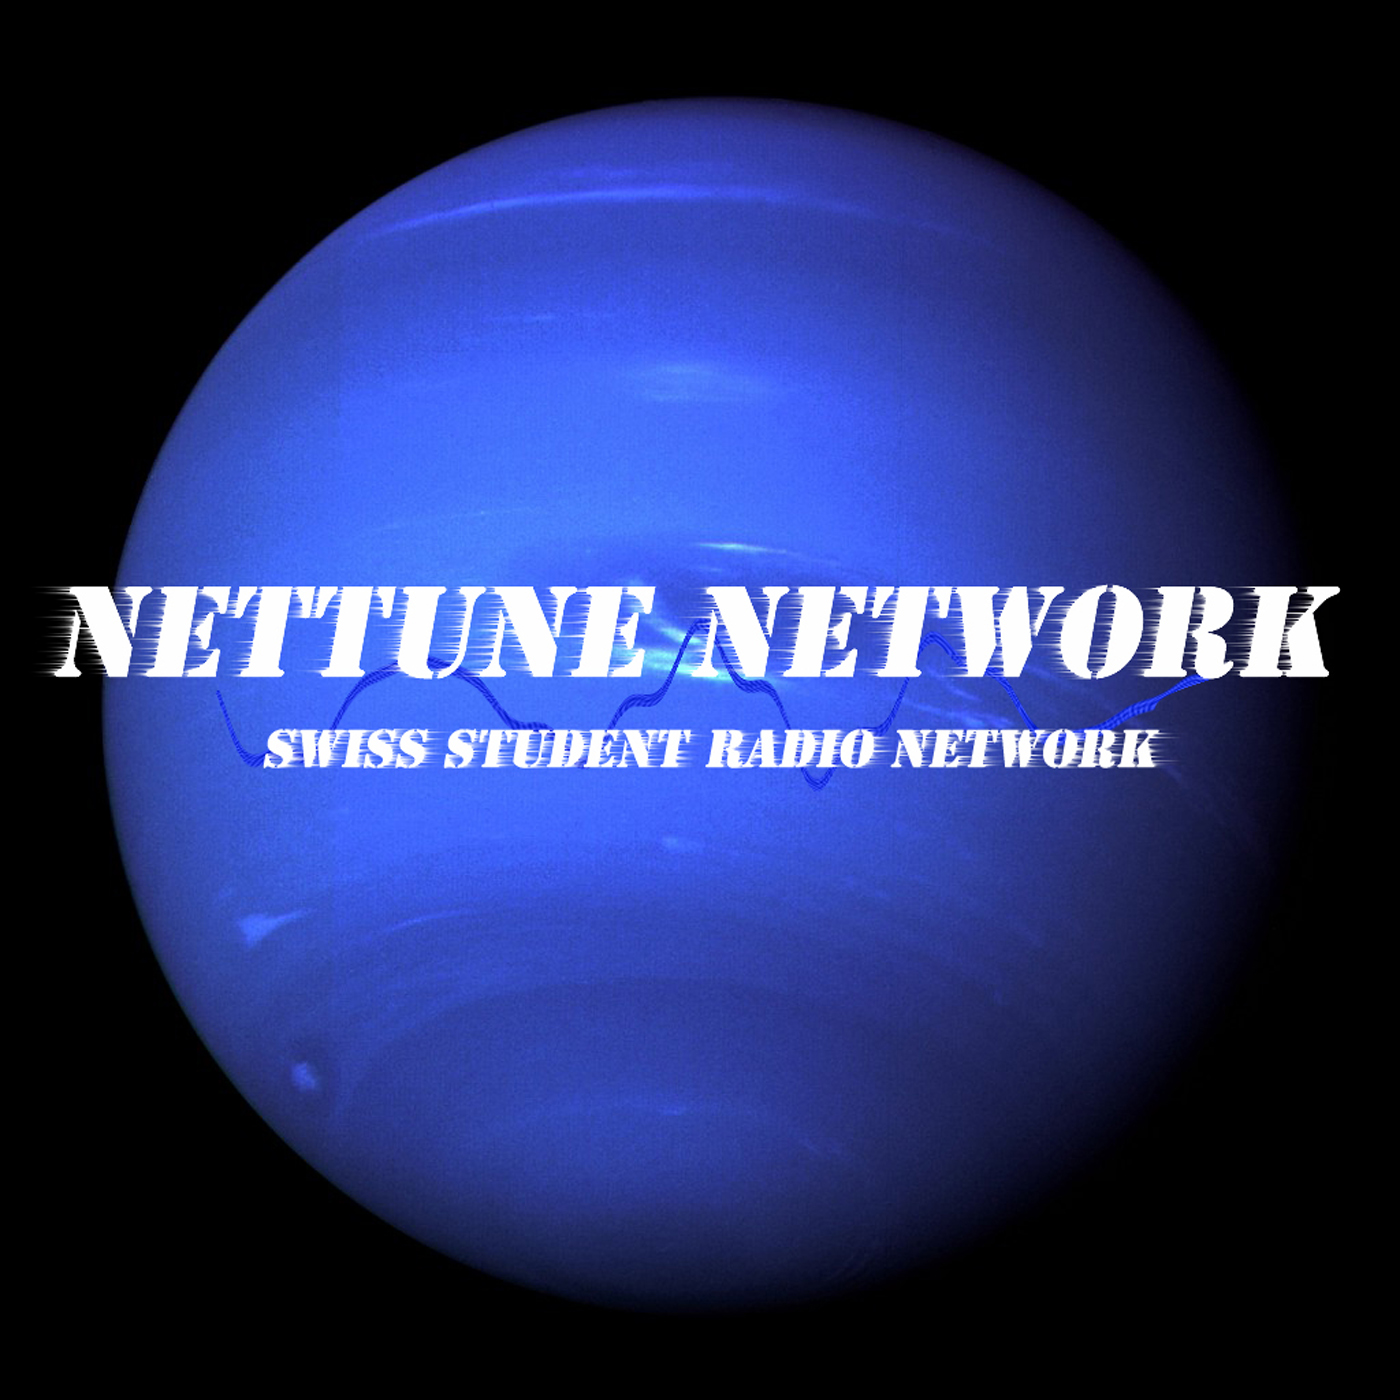 Nettune Network 2017-2018